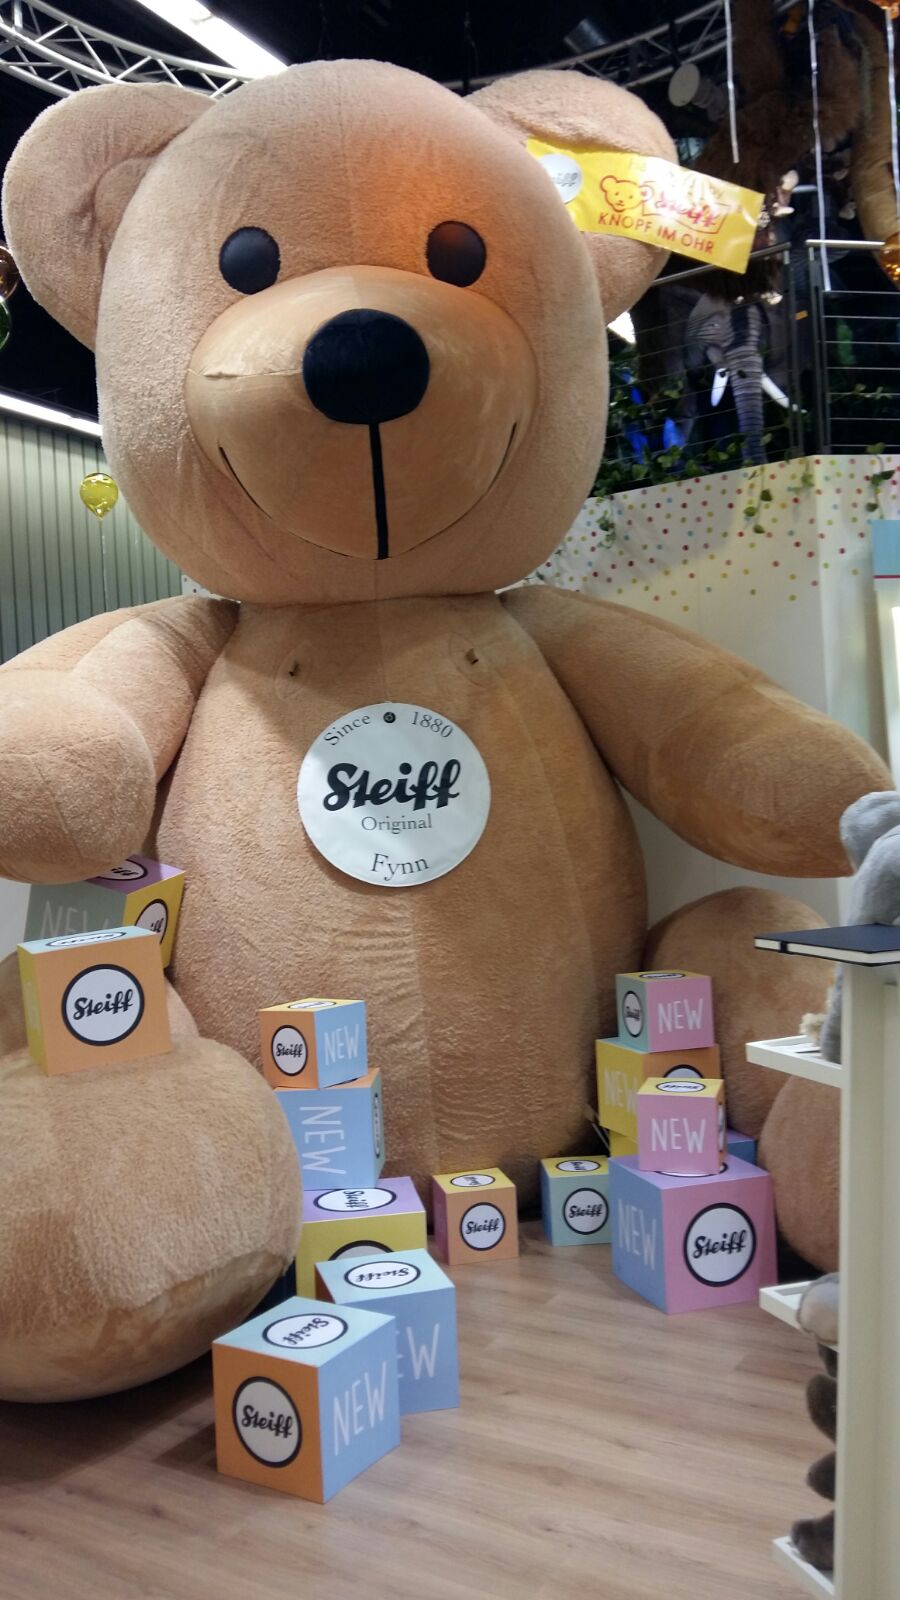 Steiff-Teddy